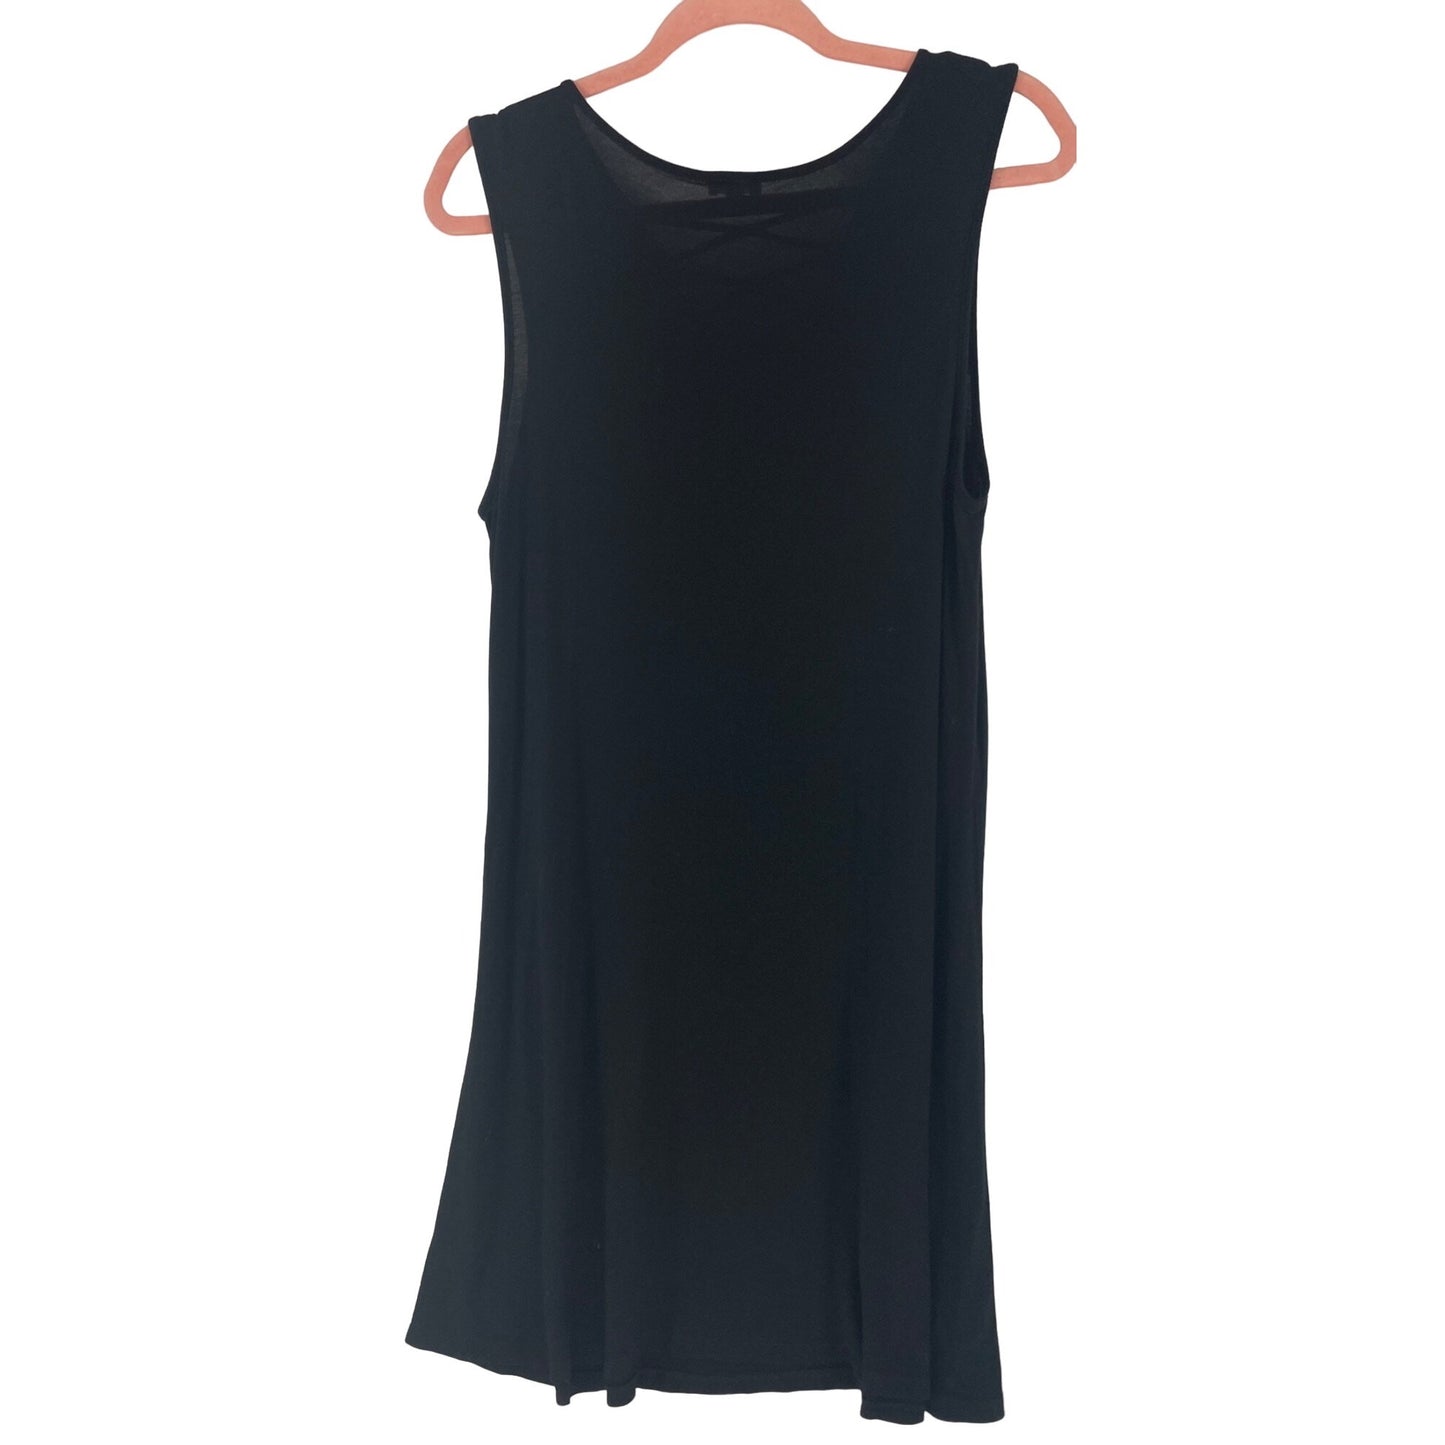 Spence Women's Size Large Black Sleeveless A-Line V-Neck Stretchy Midi Dress